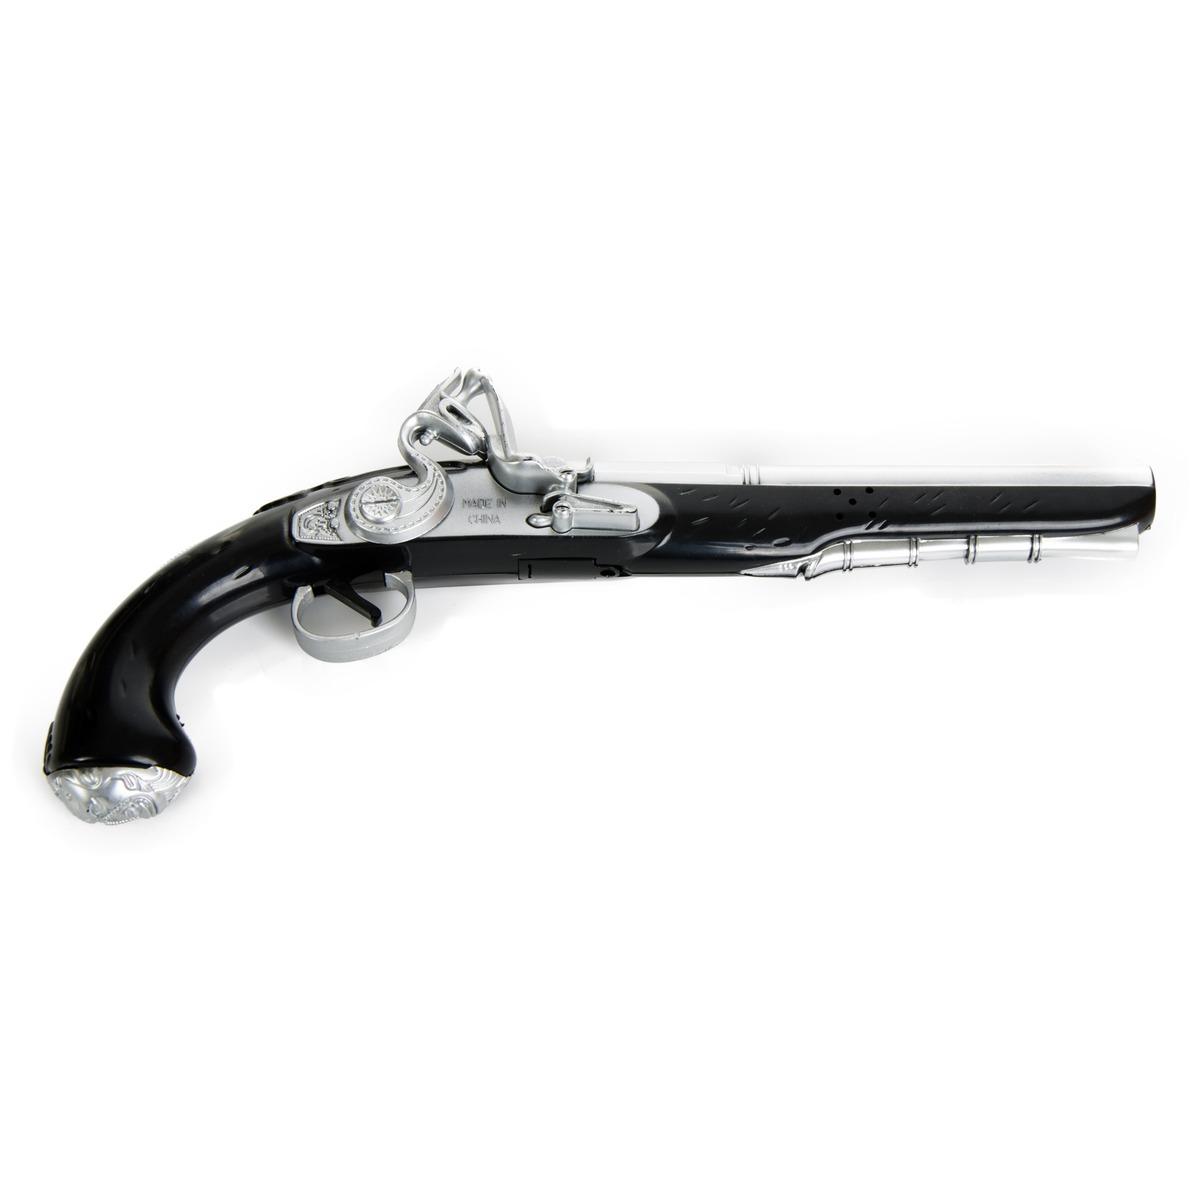 Pistolet de pirate - 38 x 15 x 5 cm - Noir, Gris